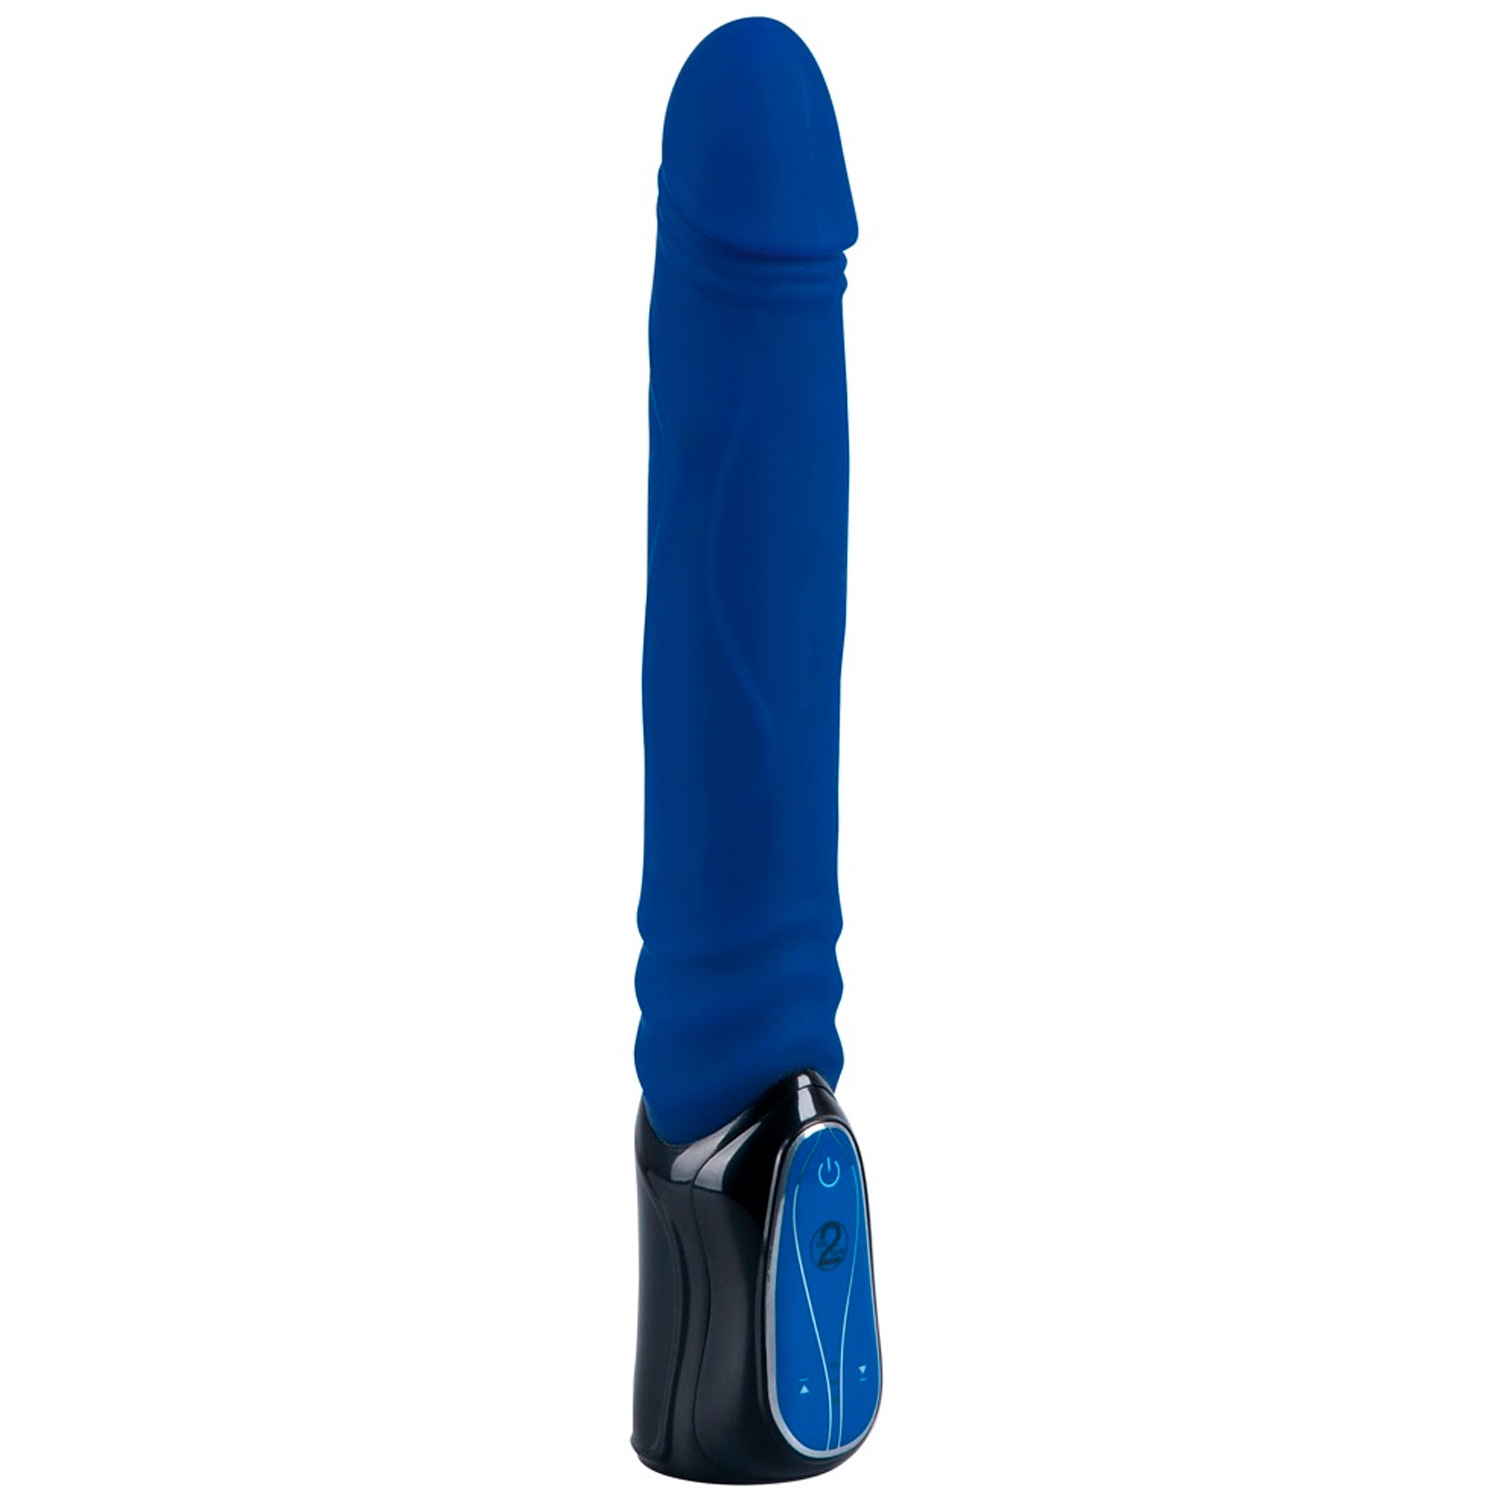 The Hammer Pulserende Dildo Vibrator - Blue